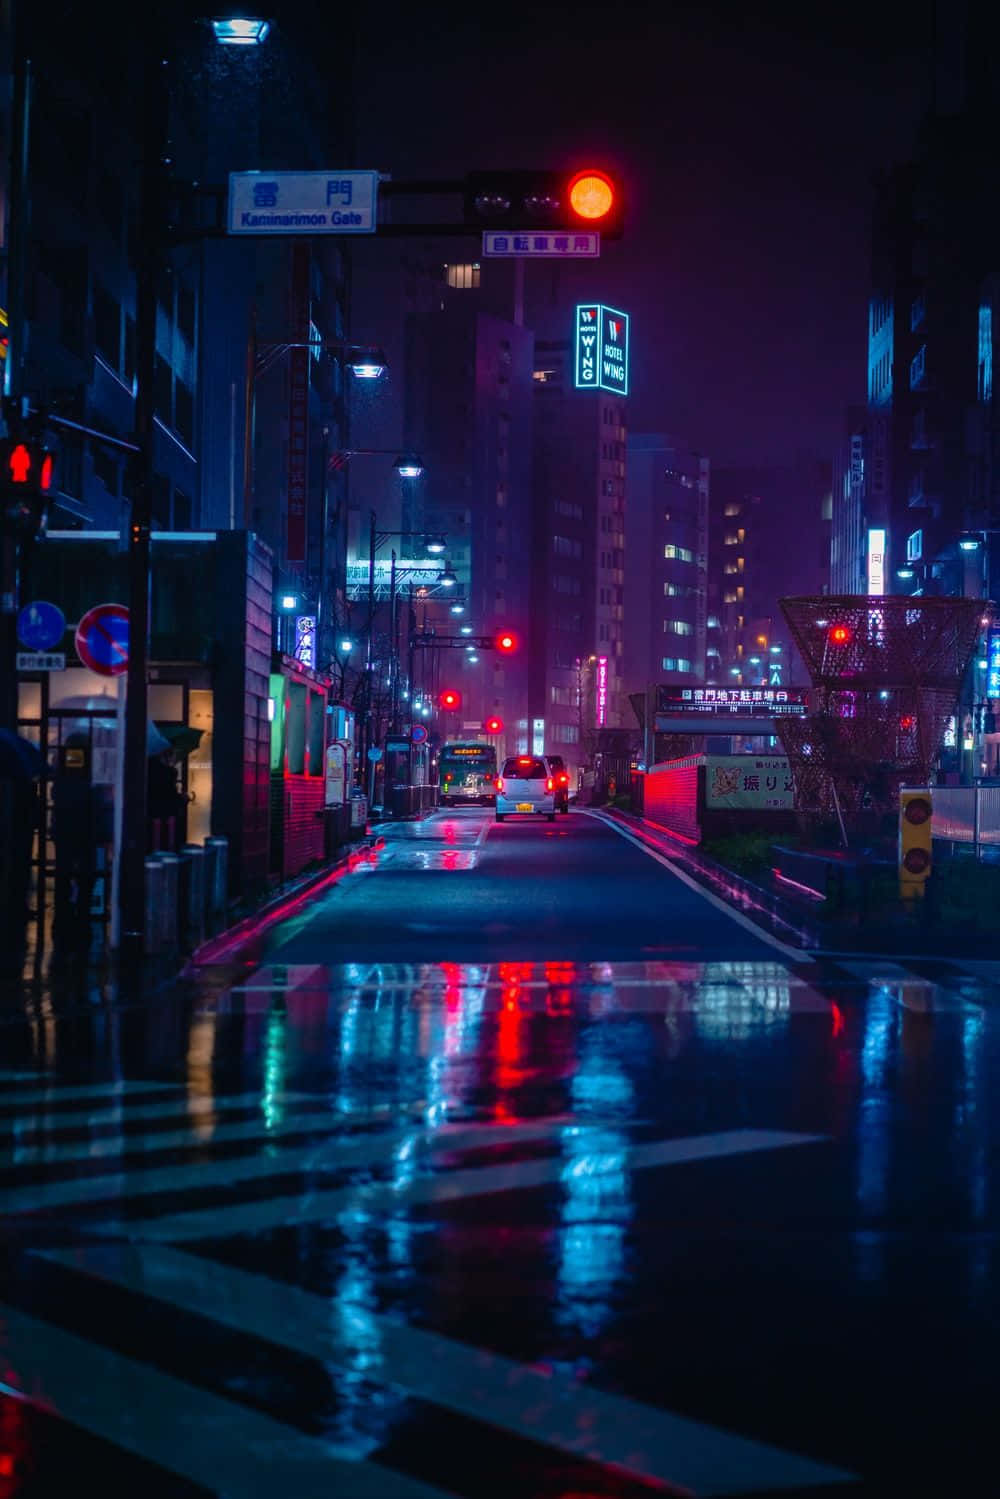 Japan Cyberpunk City by stefanirmt on DeviantArt